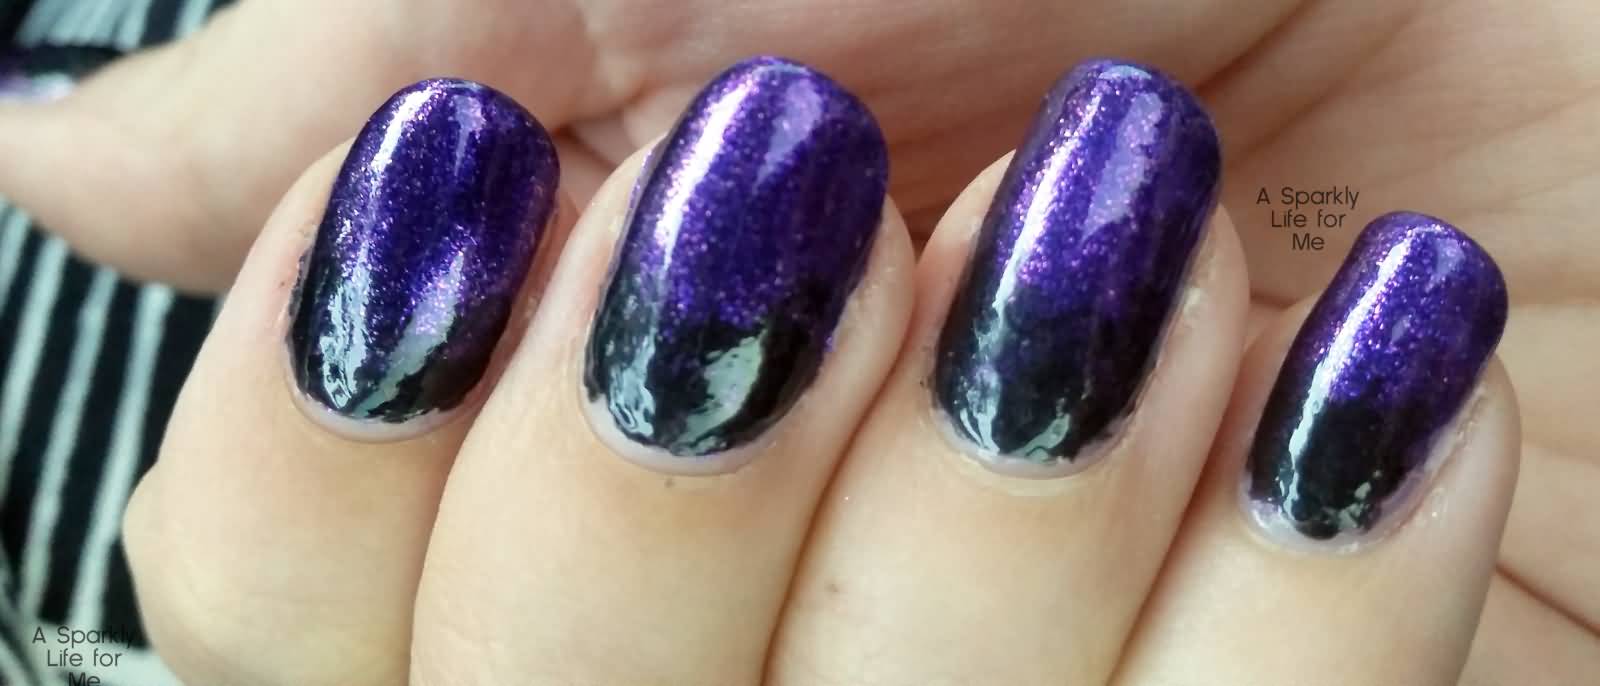 55+ Classy Purple Gradient Nail Art Ideas